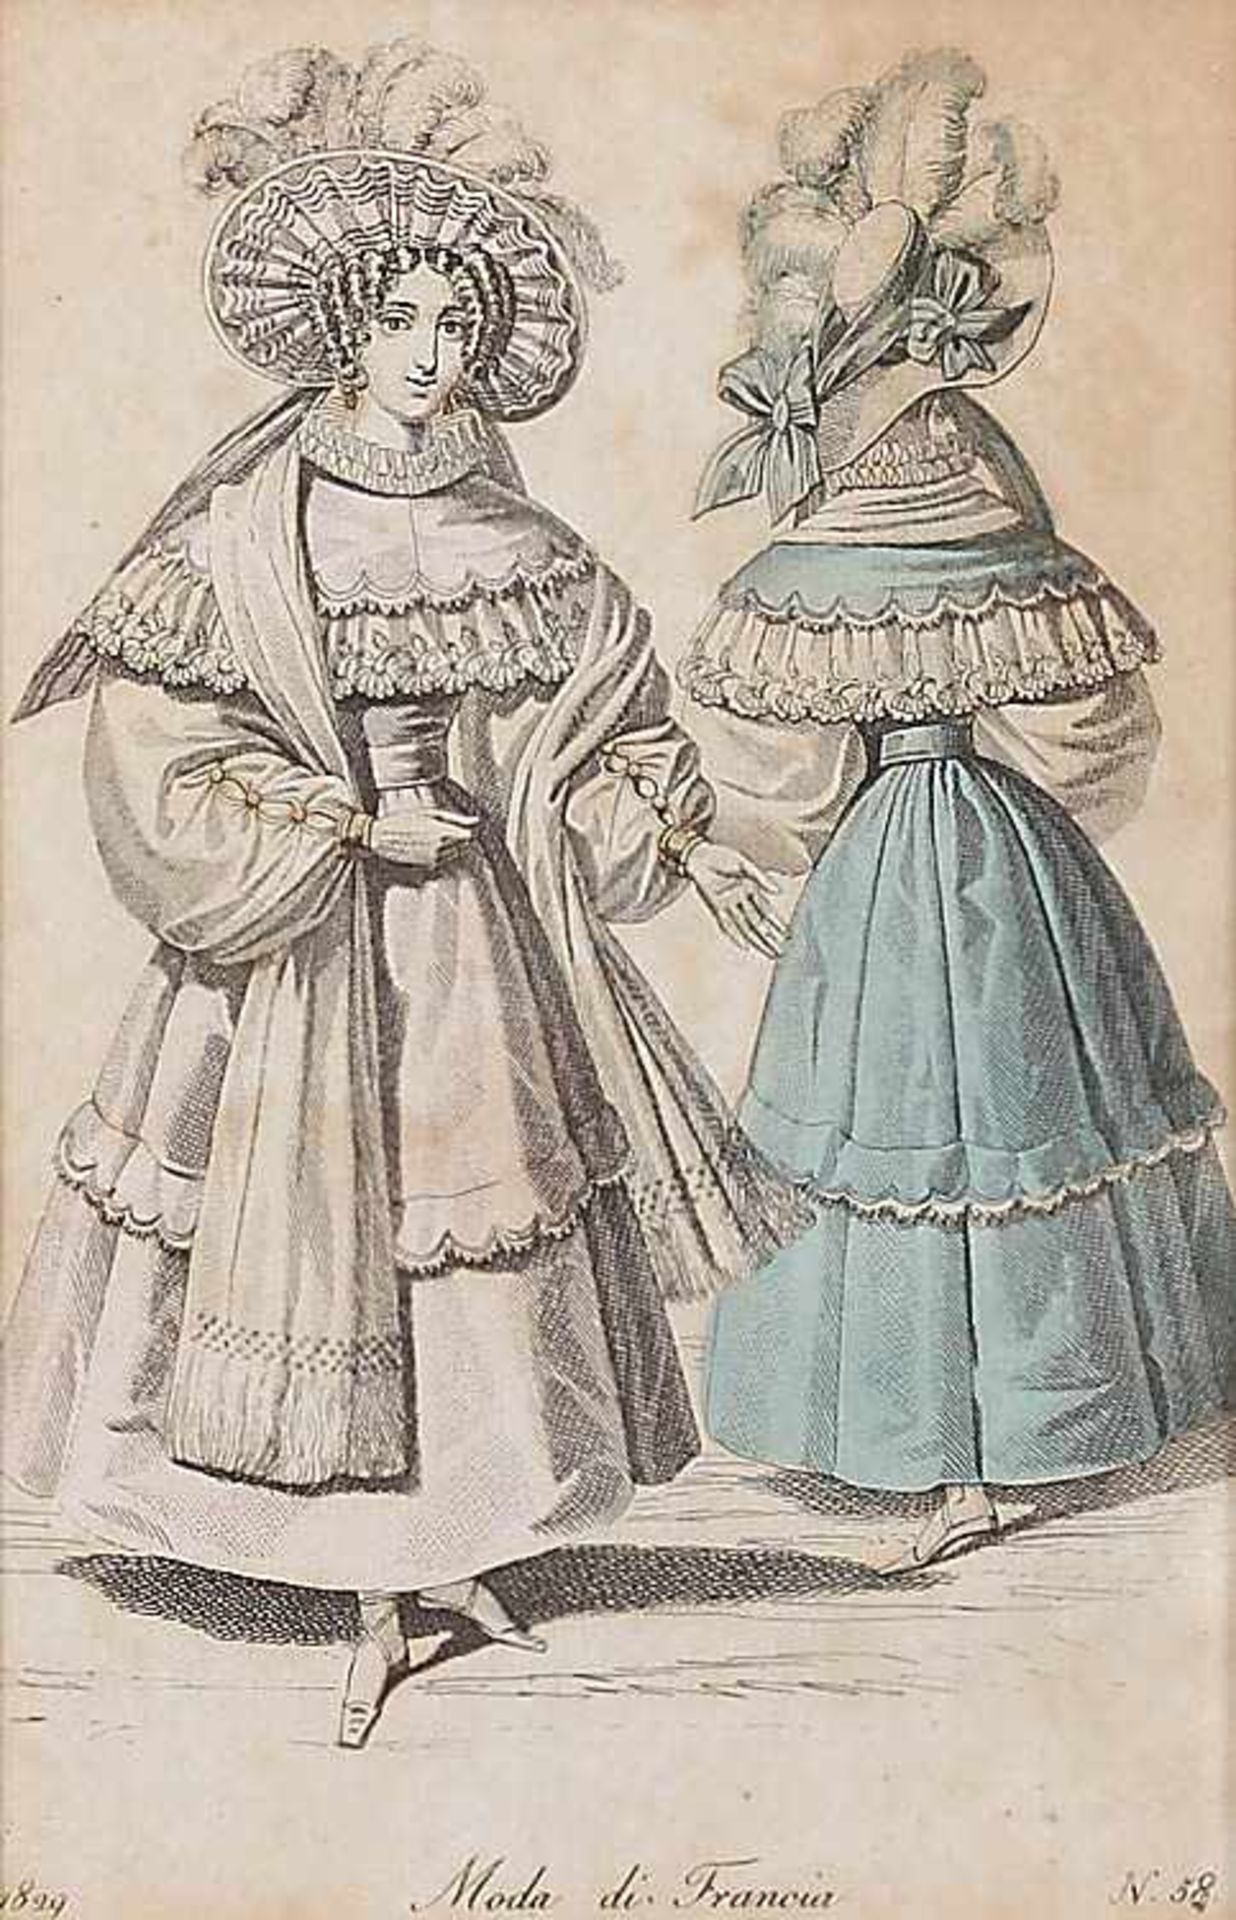 Vier col. Modestiche19. Jh..Anschauliche Darstellungen italienischer und französischer Damenmode. - Bild 2 aus 4